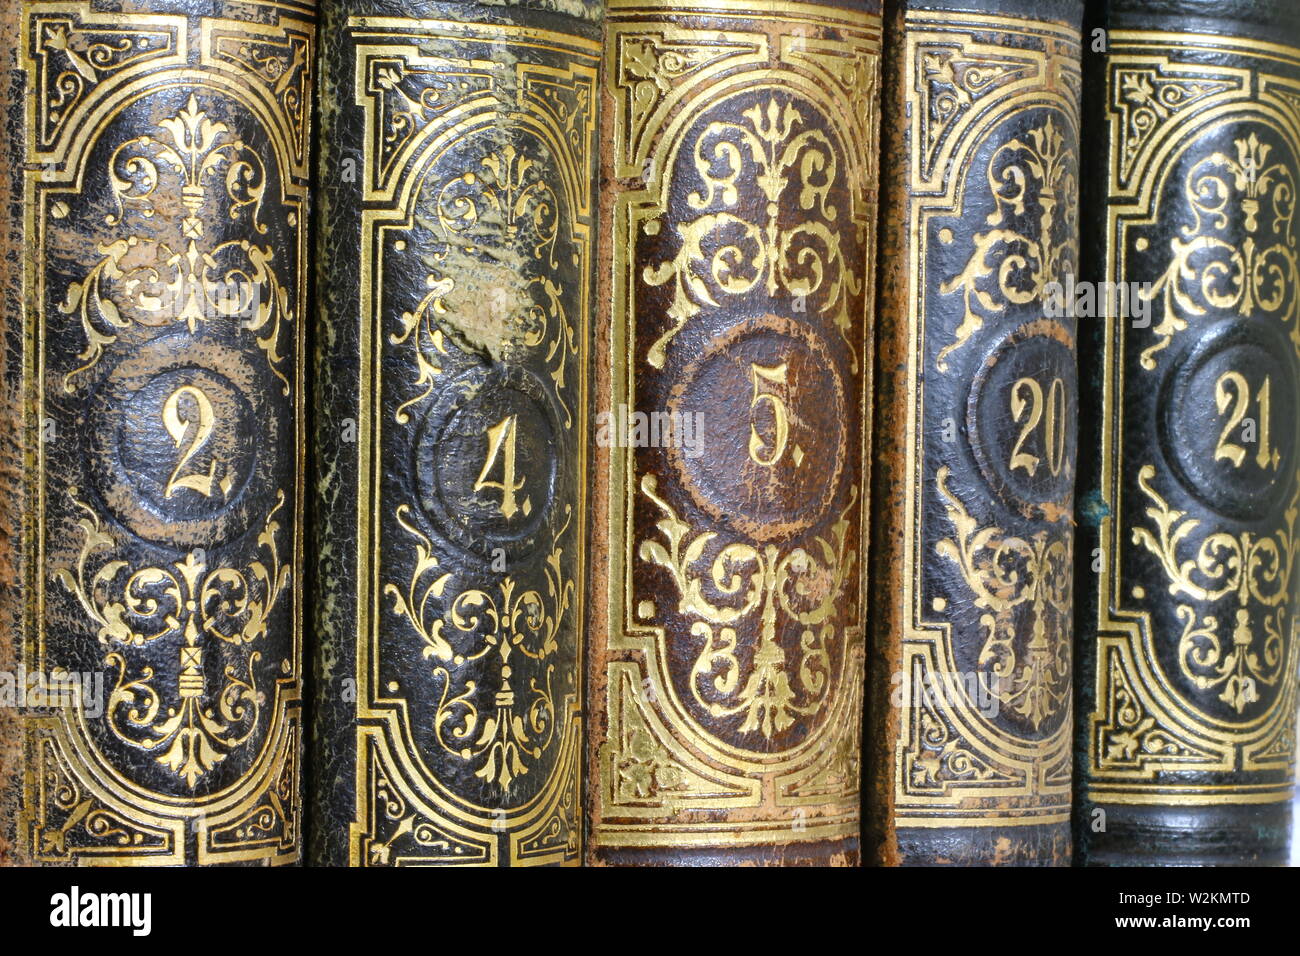 Buchstützen alte Bücher mit Nummerierung Volumes Stockfotografie - Alamy